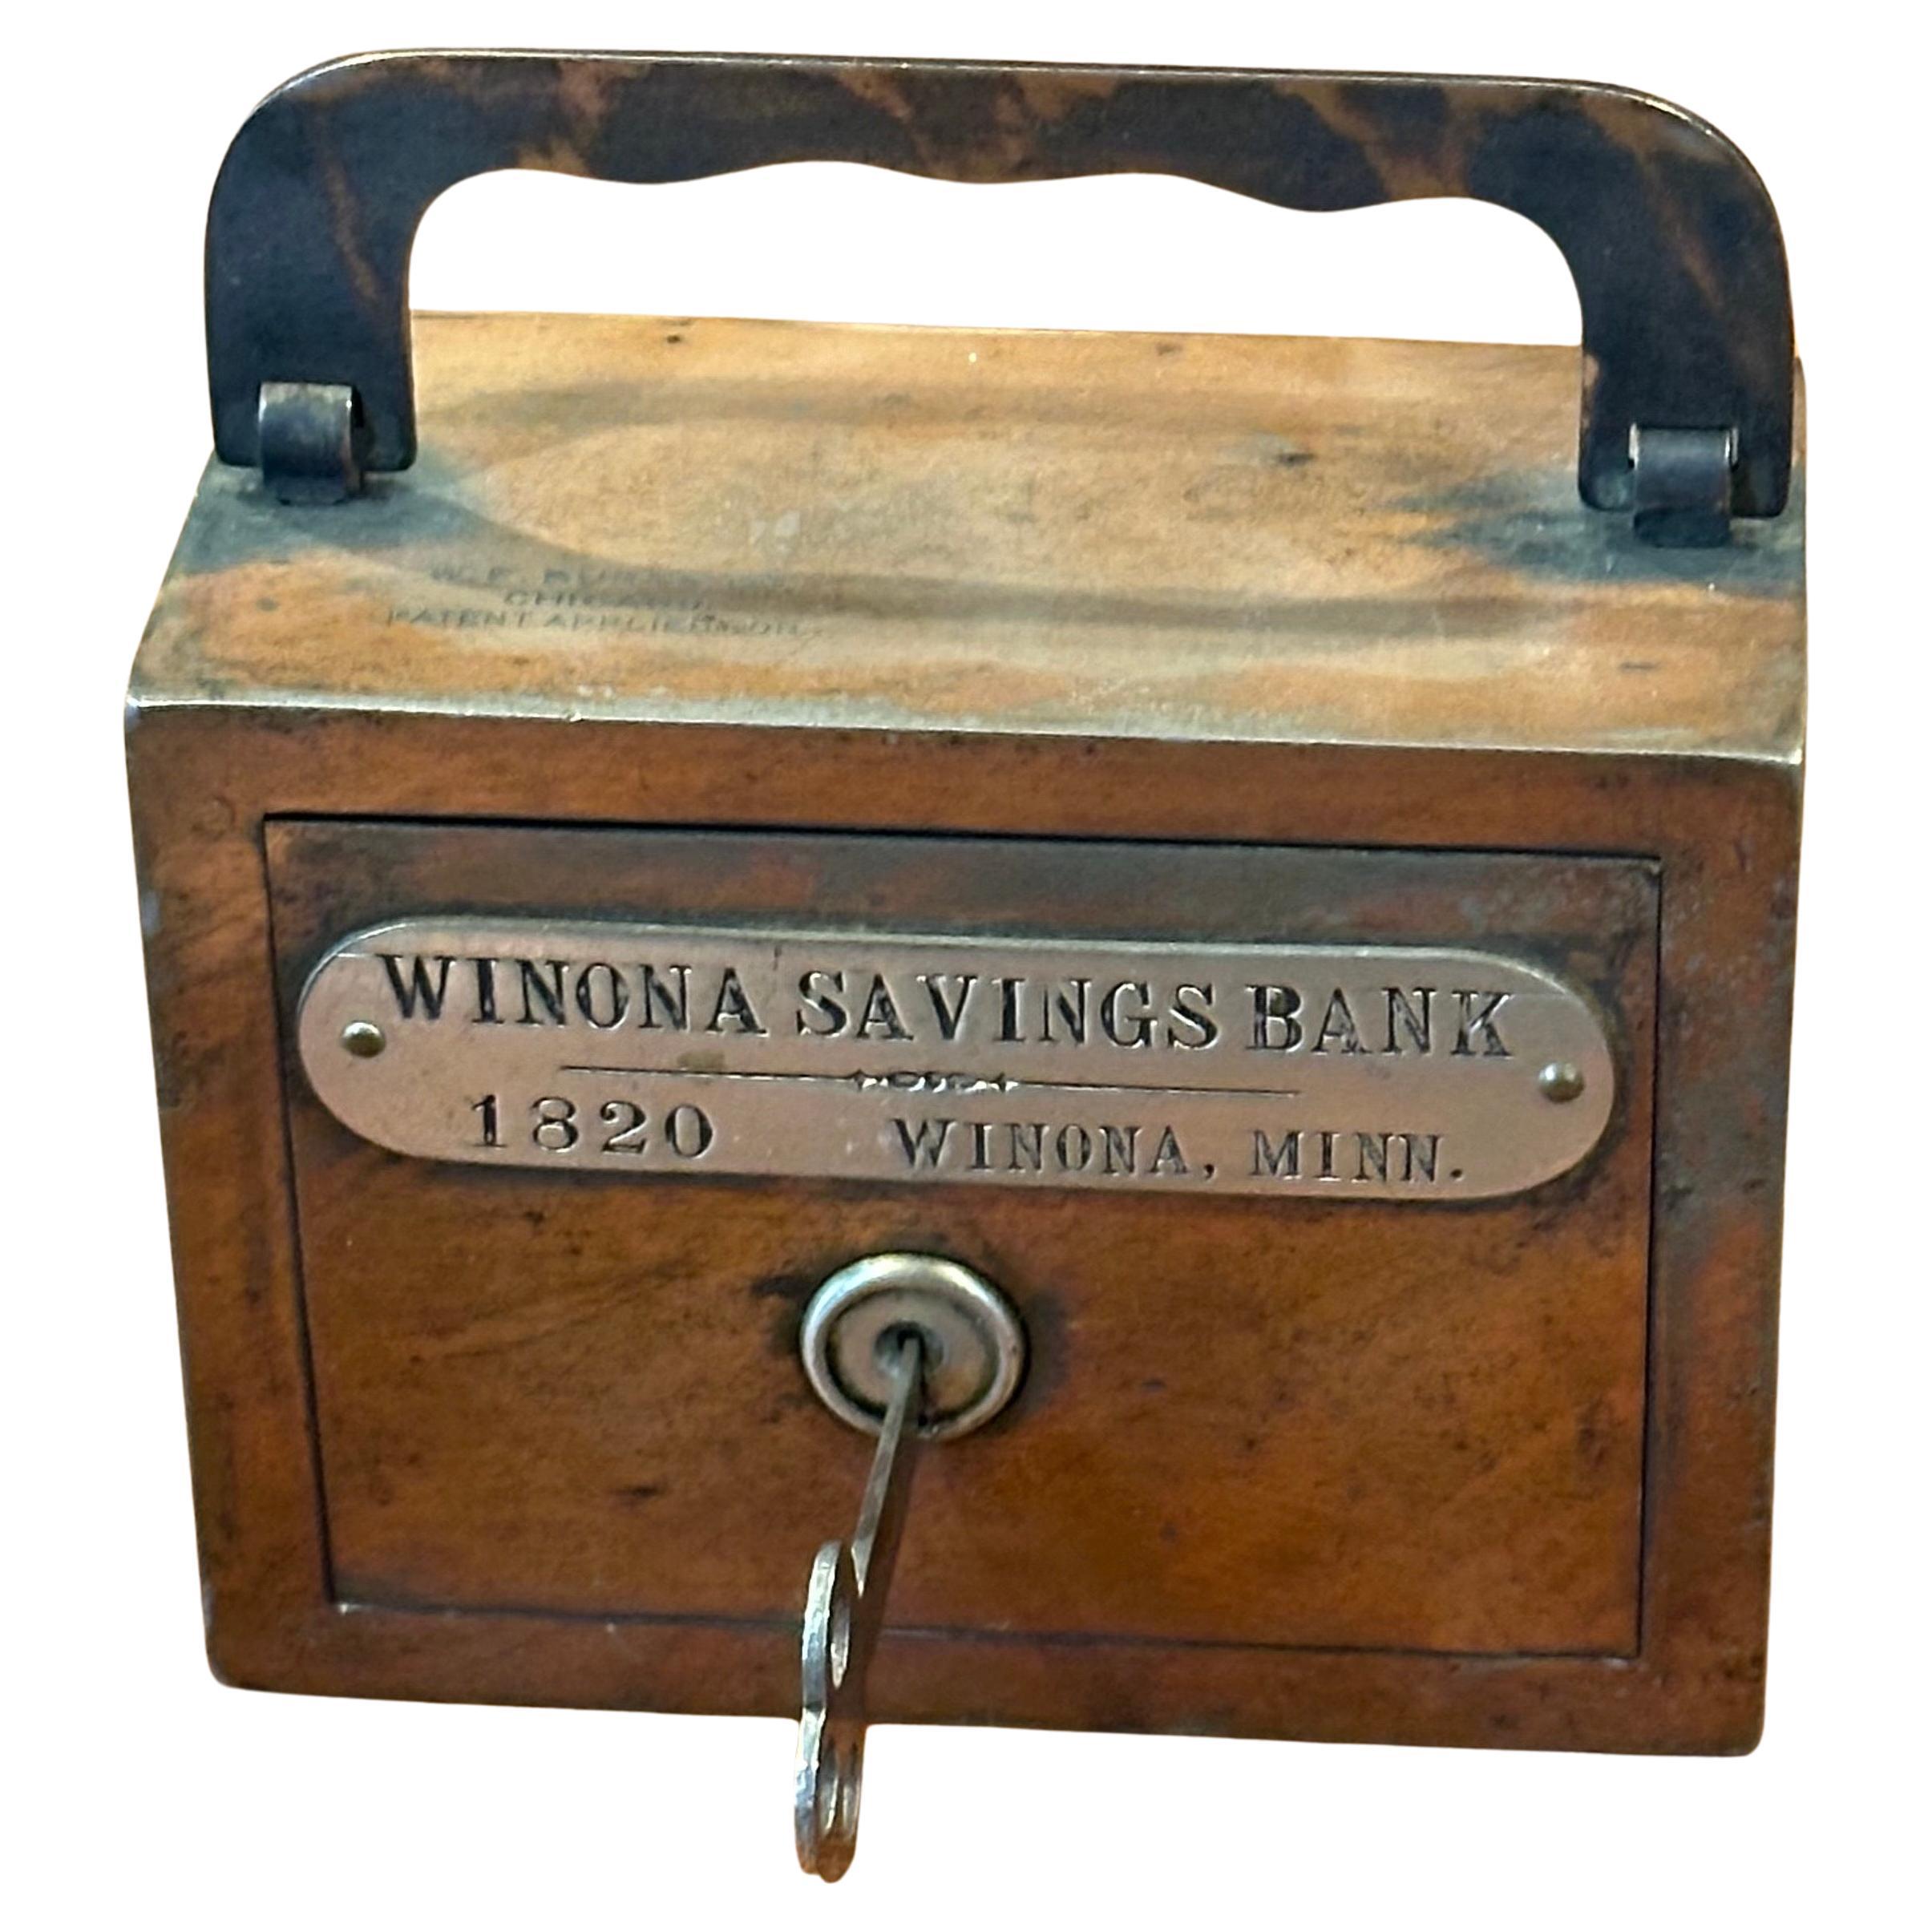 Tirelire vintage de la Winona Savings Bank of Minnesota avec clé, vers les années 1930. La boîte est en bon état et mesure 4,5 